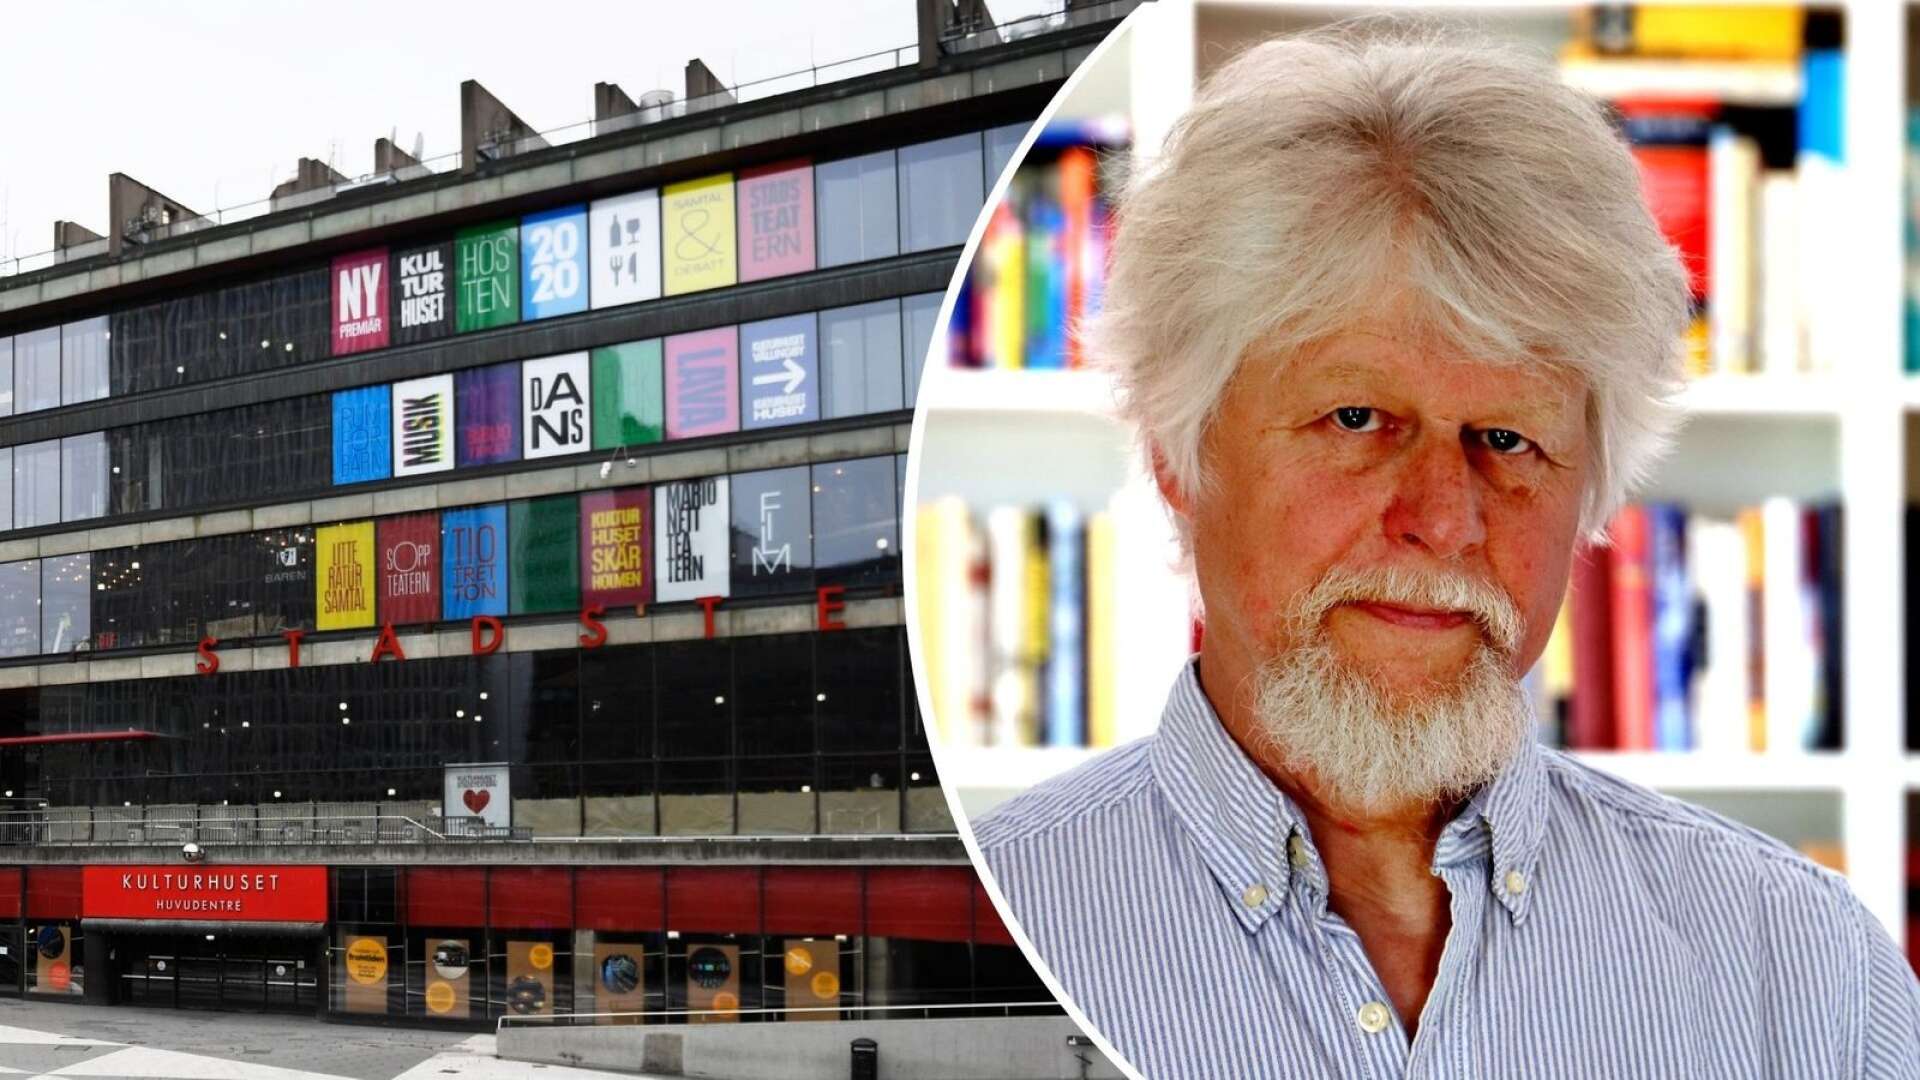 Värmländske Lars Andersson är en av 40 svenska författare som skrivit en text tillsammans i ett lekfullt och annorlunda skrivprojekt för Kulturhuset Stadsteatern i Stockholm.